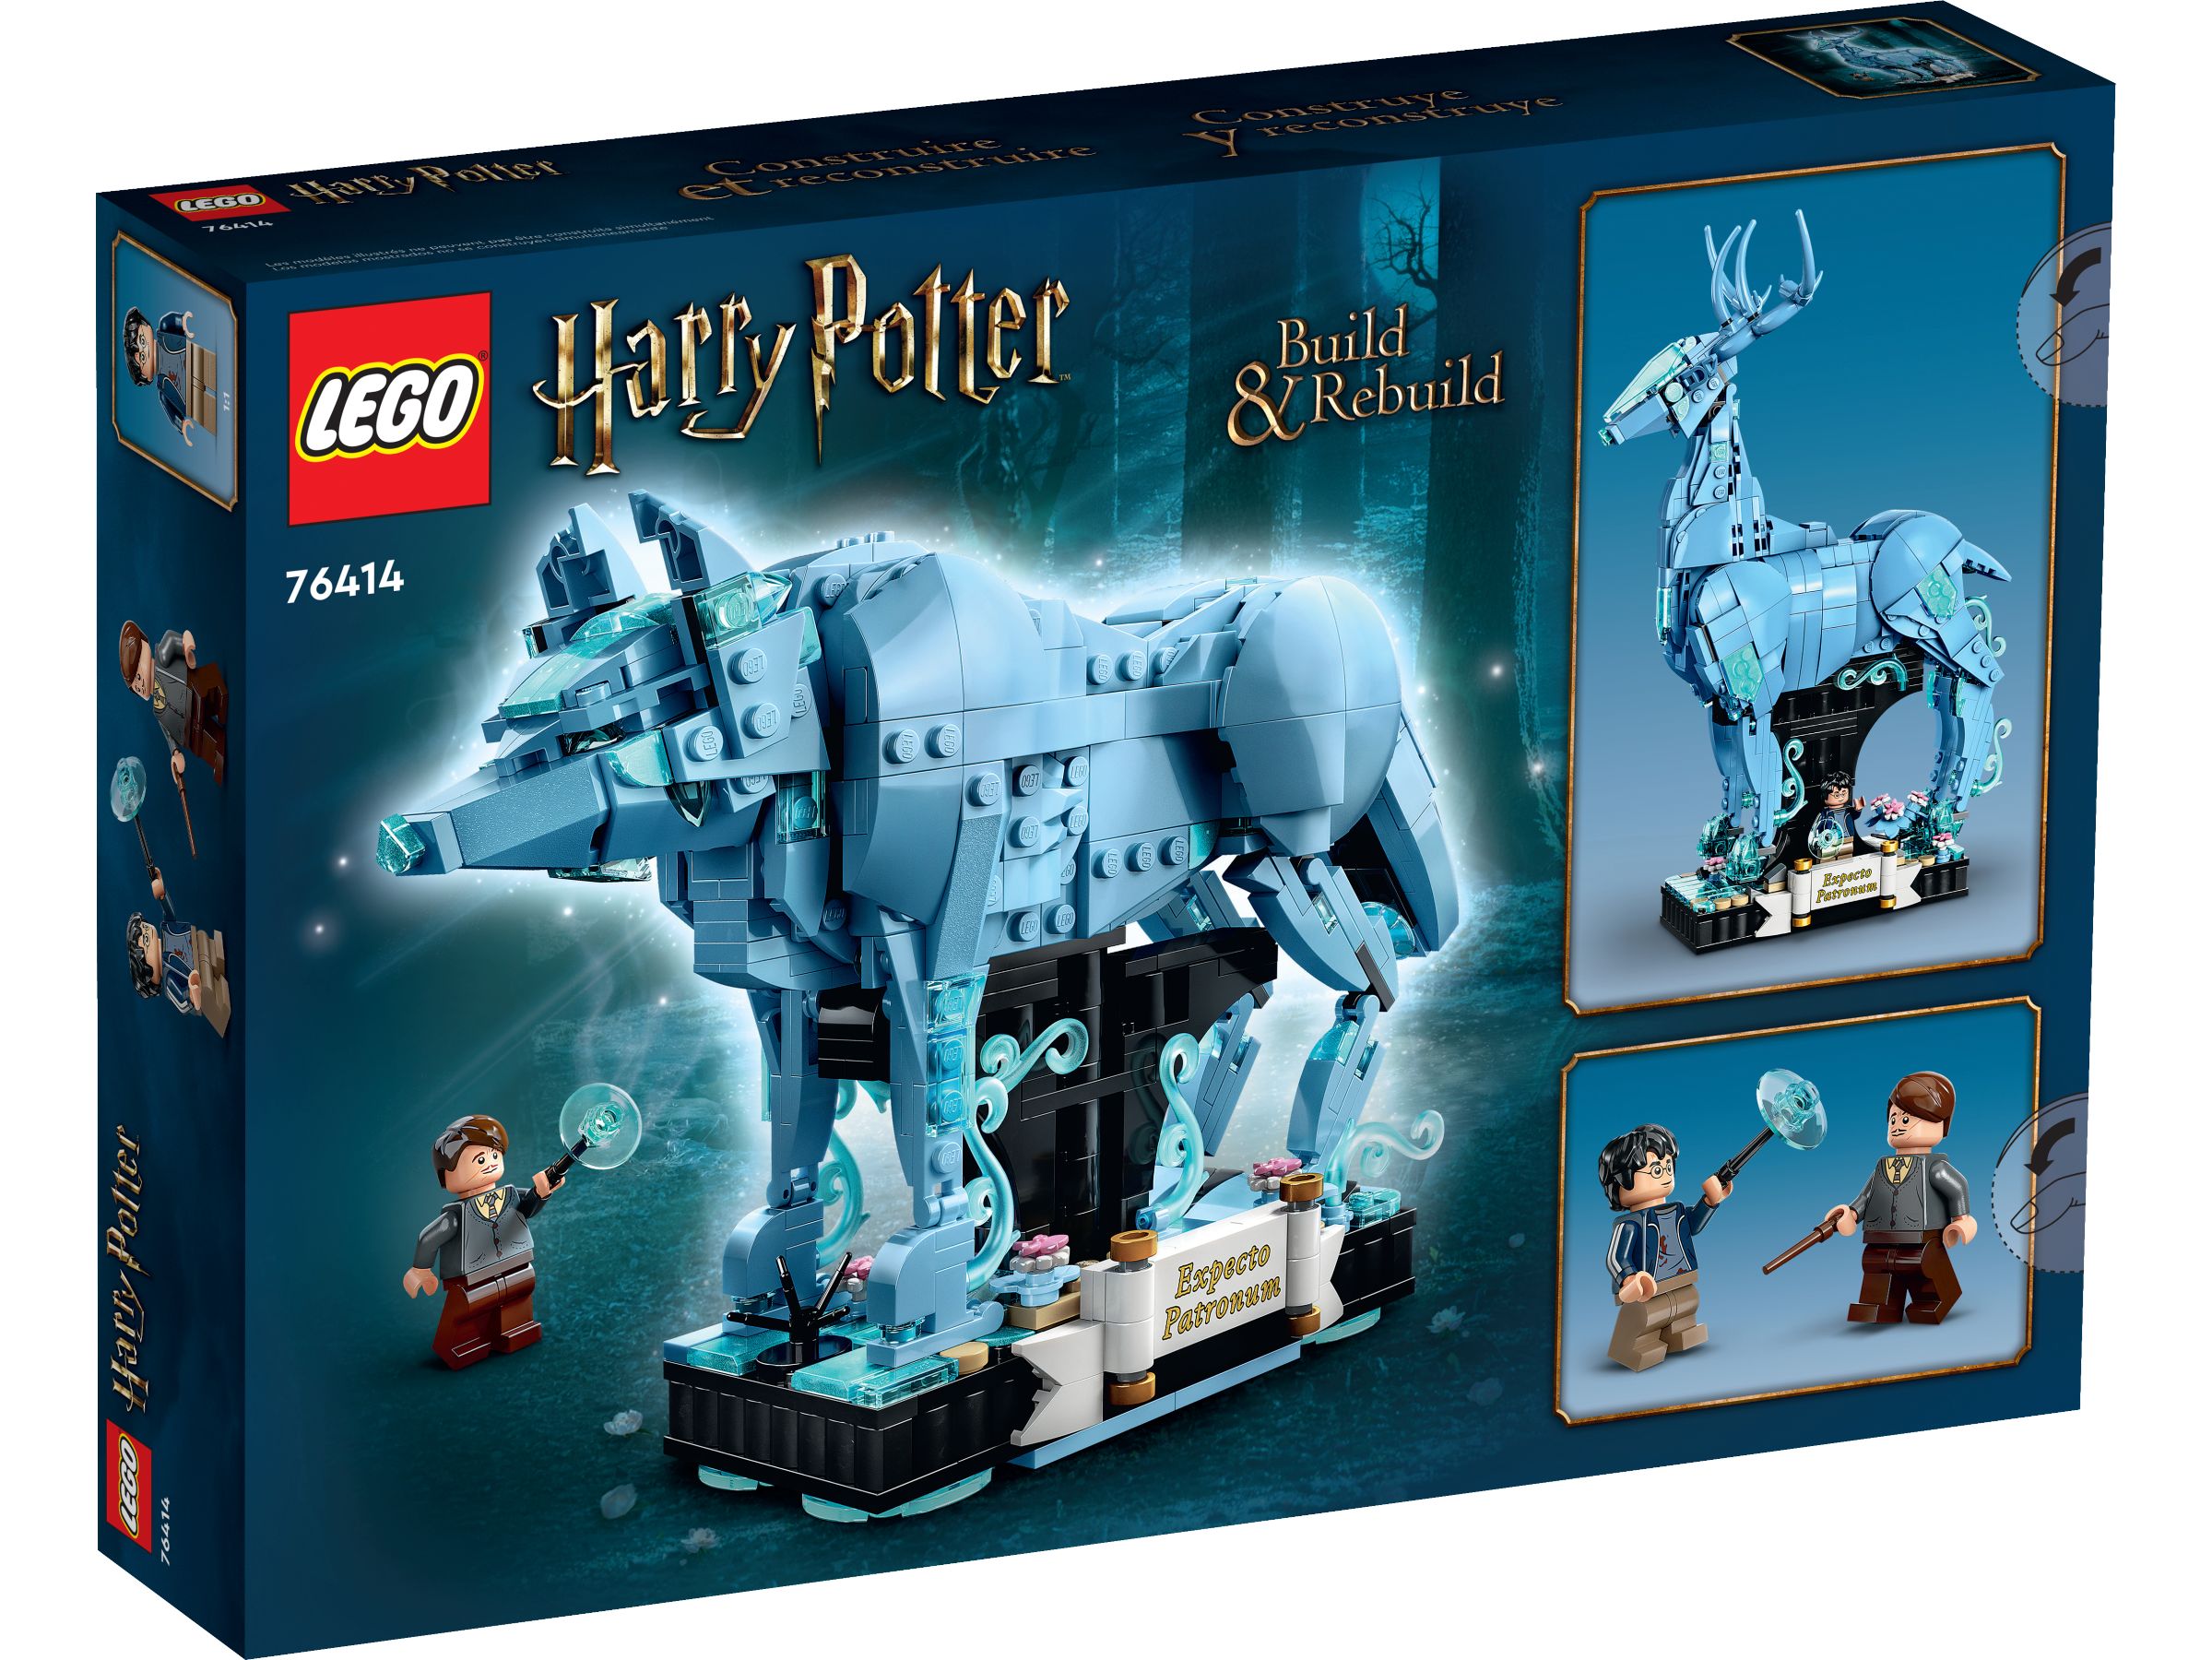 LEGO Harry Potter 76414 Expecto Patronum LEGO_76414_Box5_v39.jpg